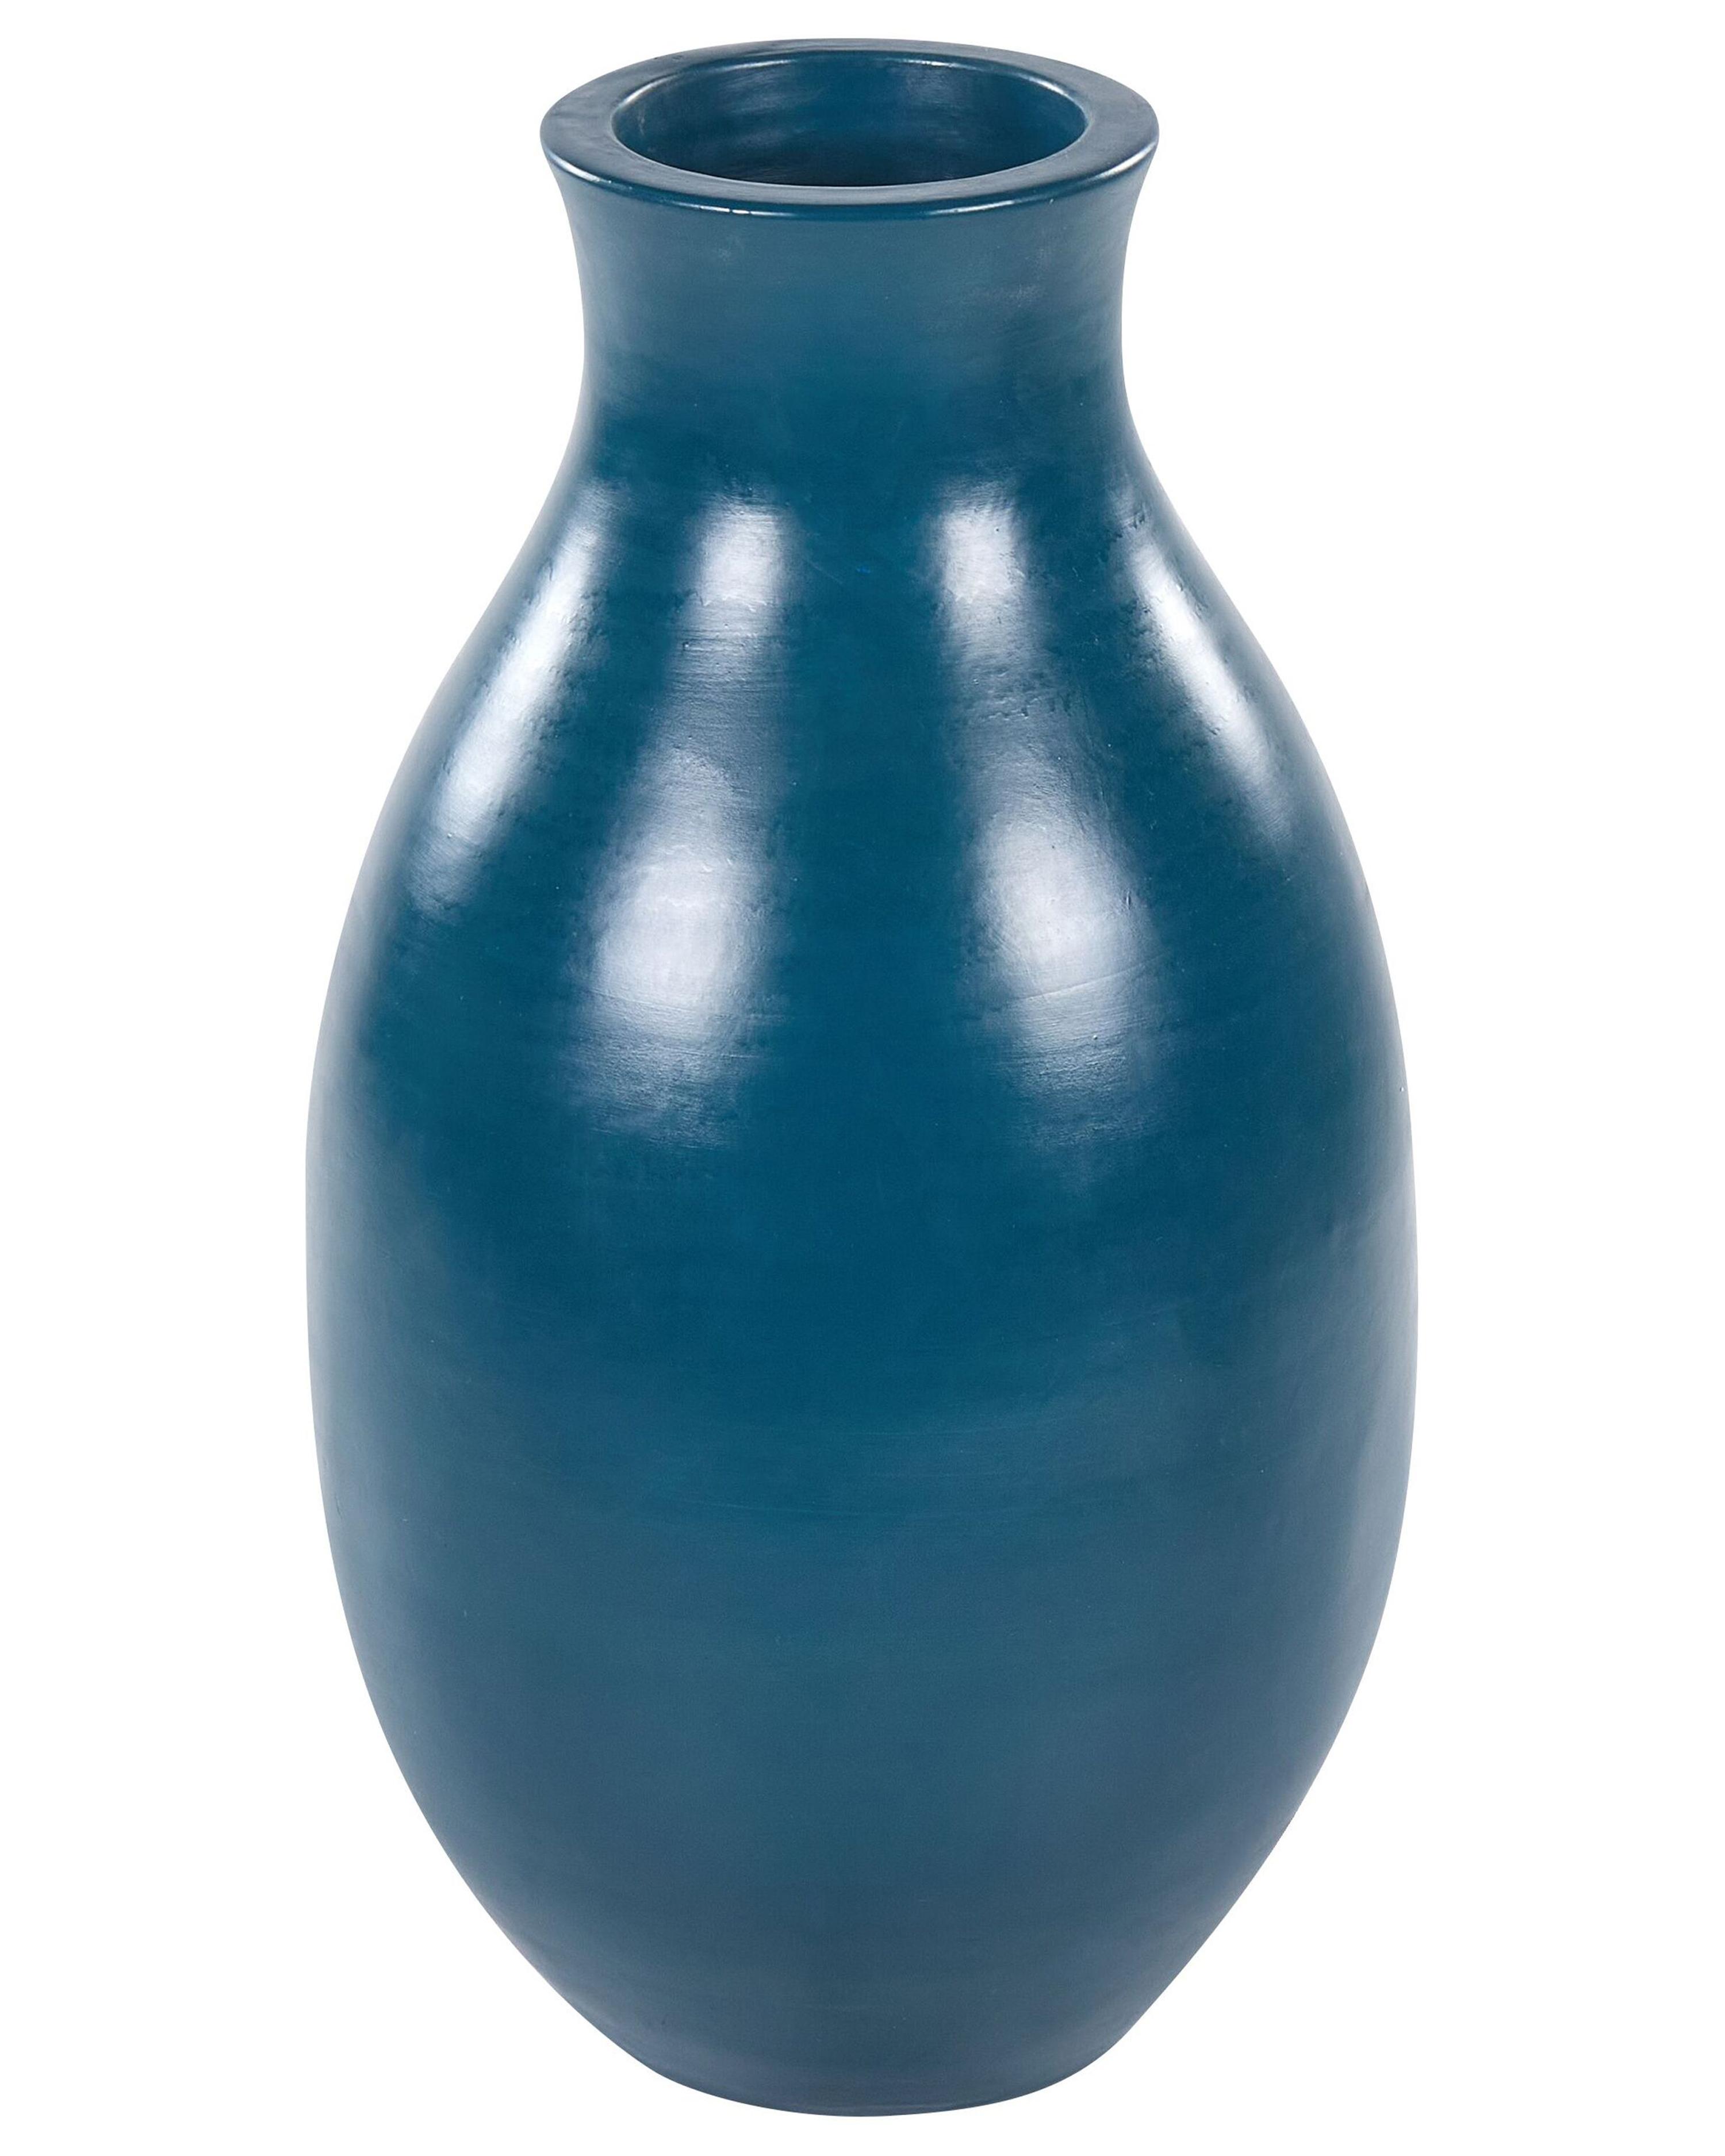 Terakotová dekorativní váza 48 cm modrá STAGIRA